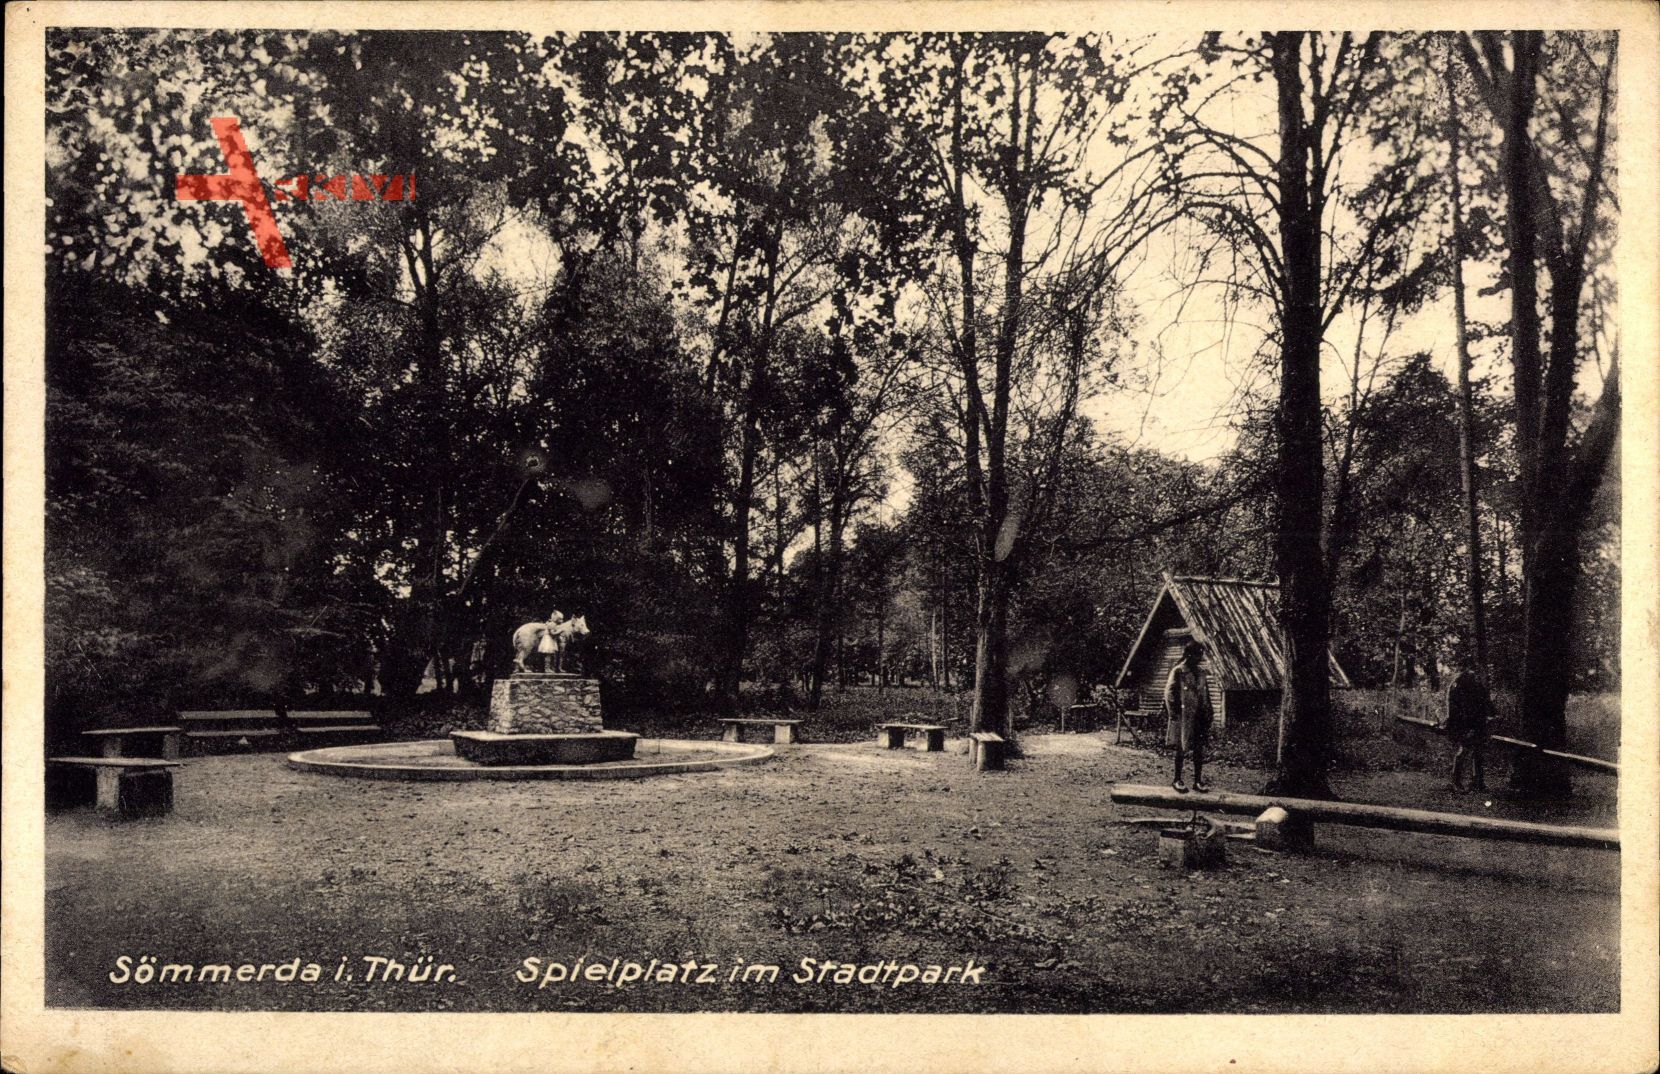 Sömmerda im Thüringer Becken, Spielplatz mit Stadtpark, Rotkäppchenstatue